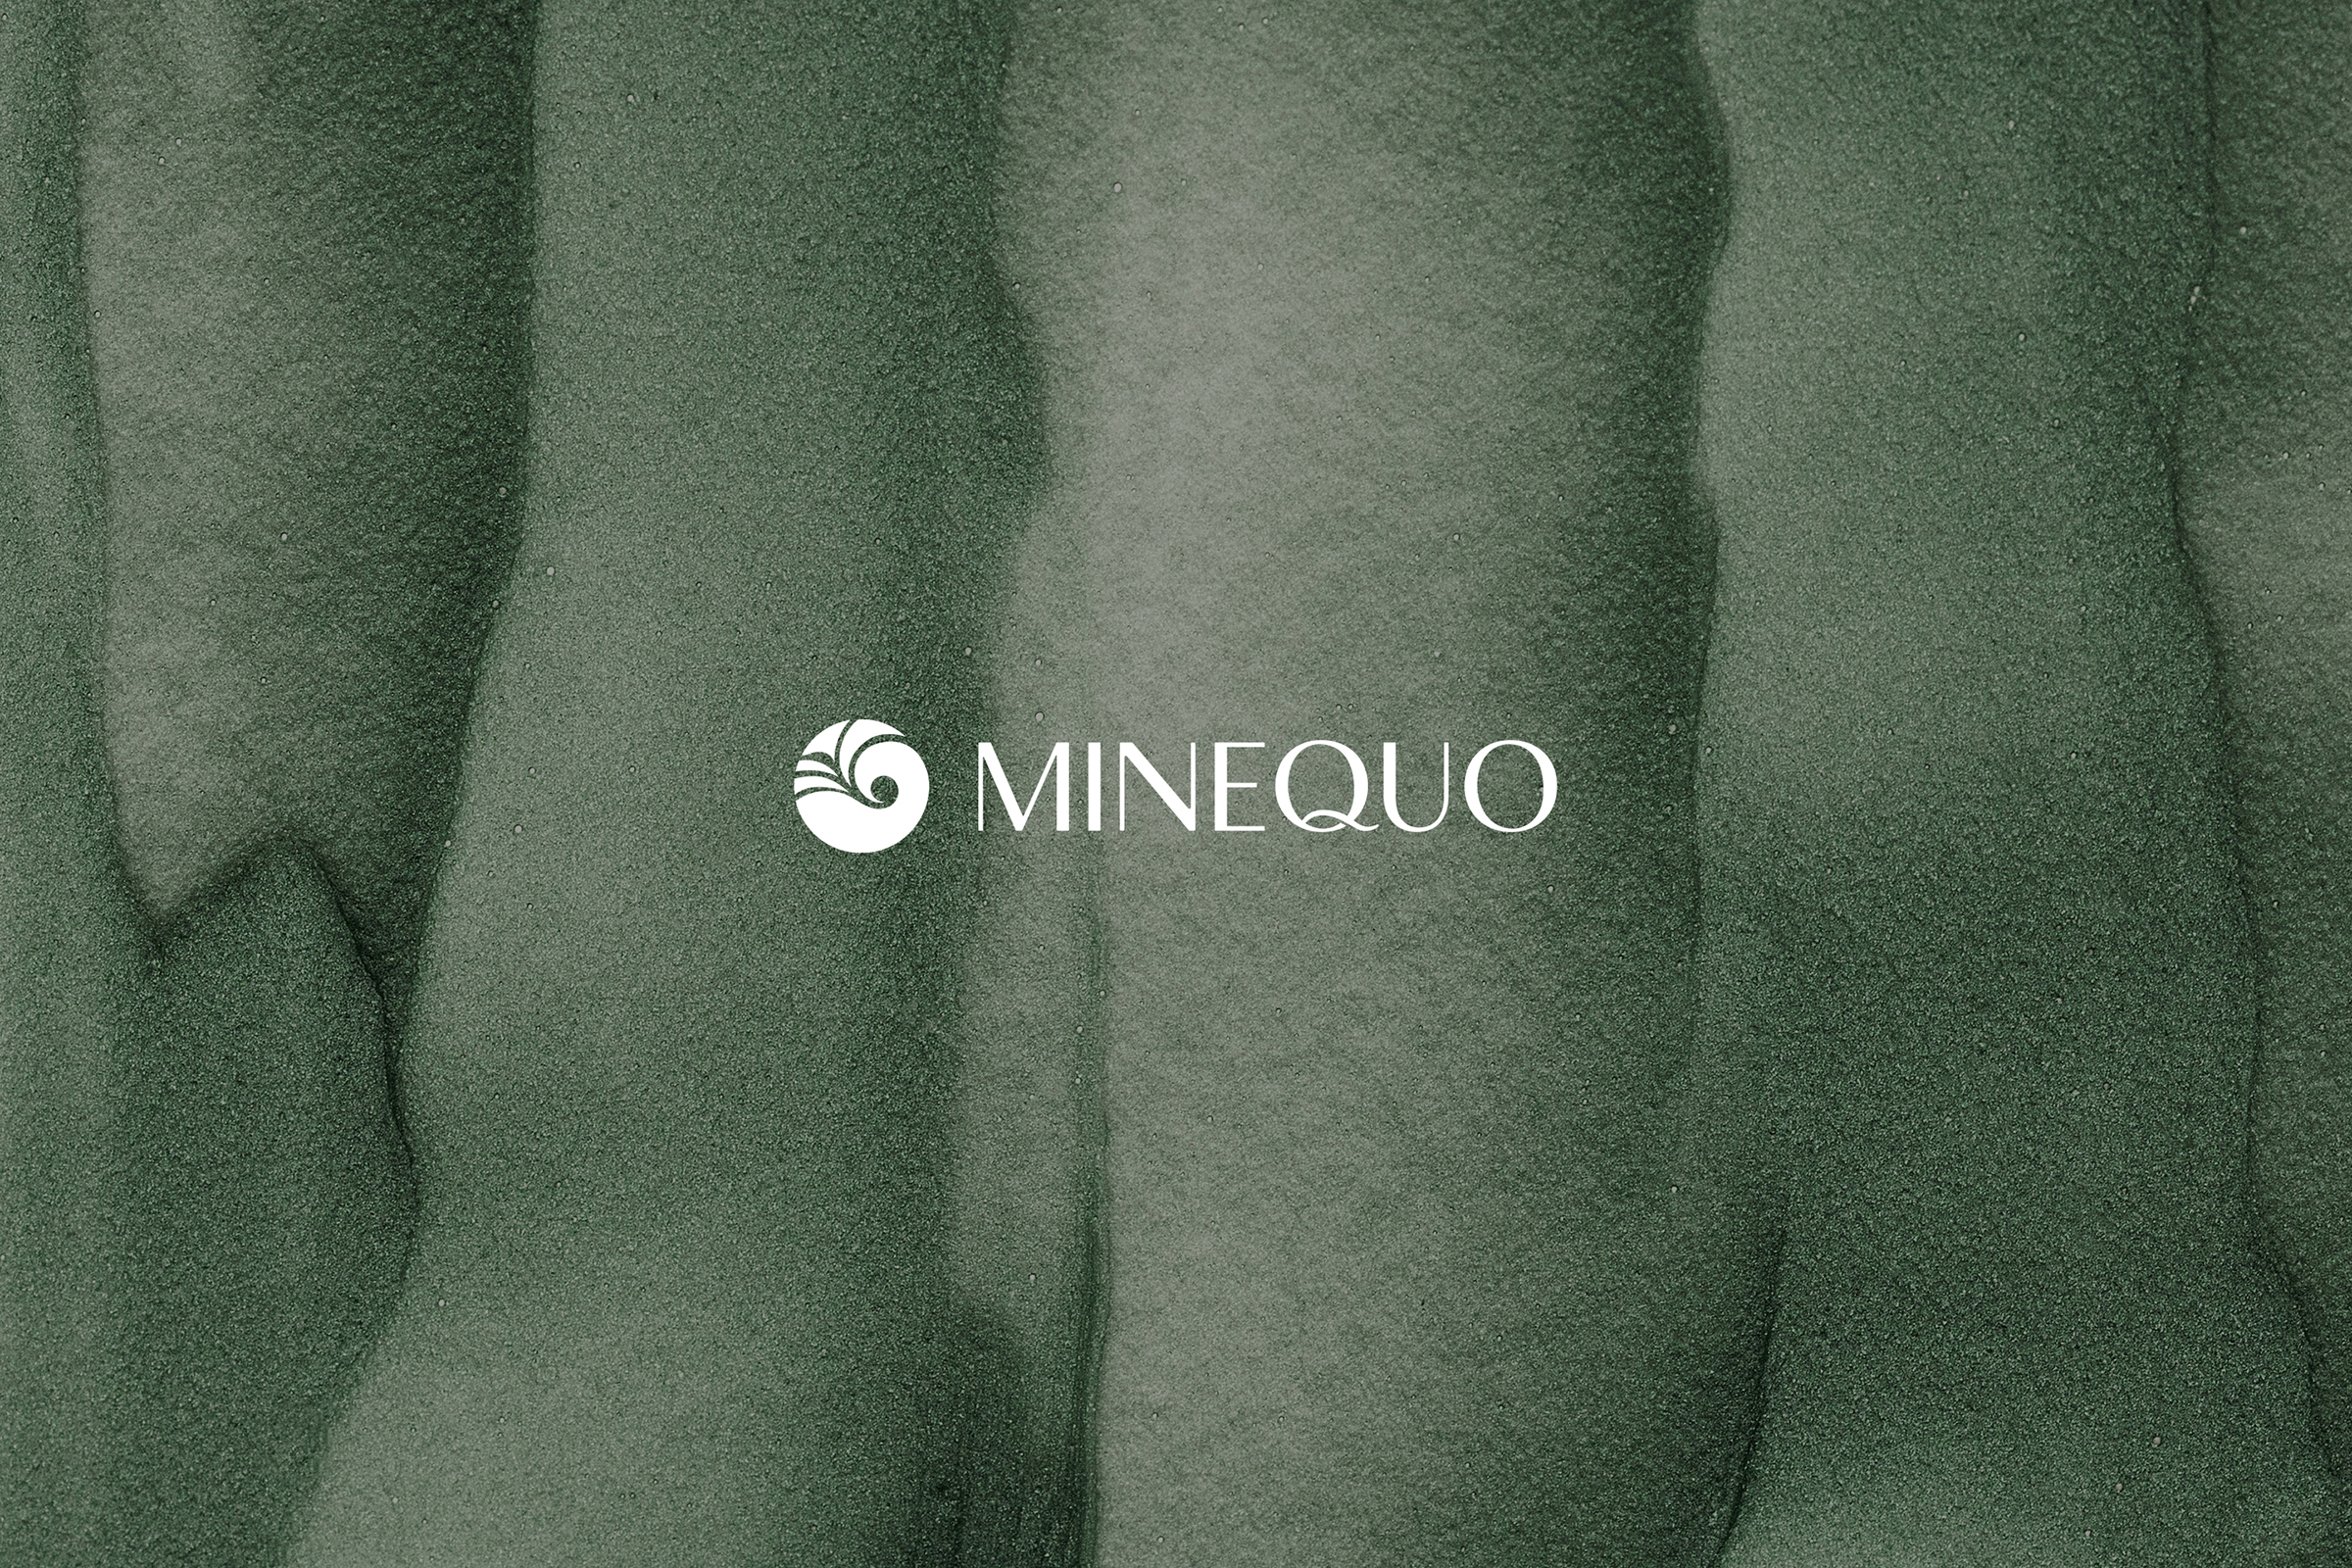 MINEQUO - Powered By Nature